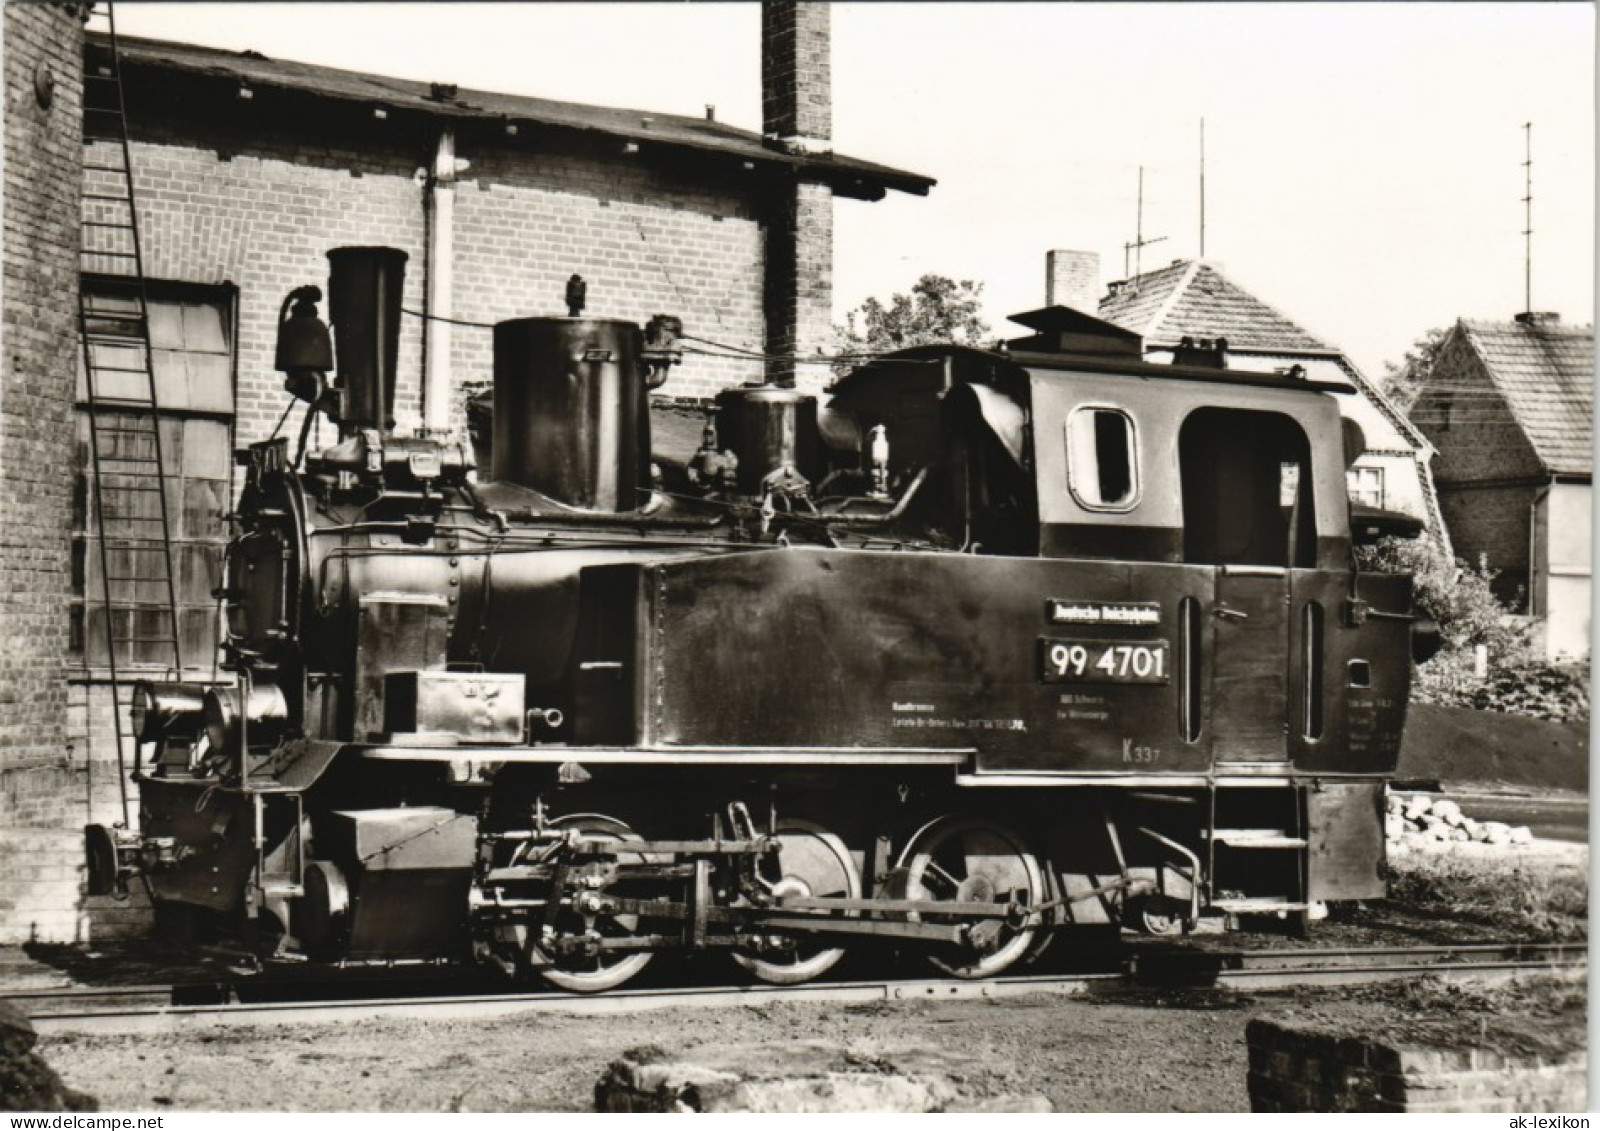 Ansichtskarte  Dampflokomotive Prihnitz Baureihe 99470 1977 - Trains